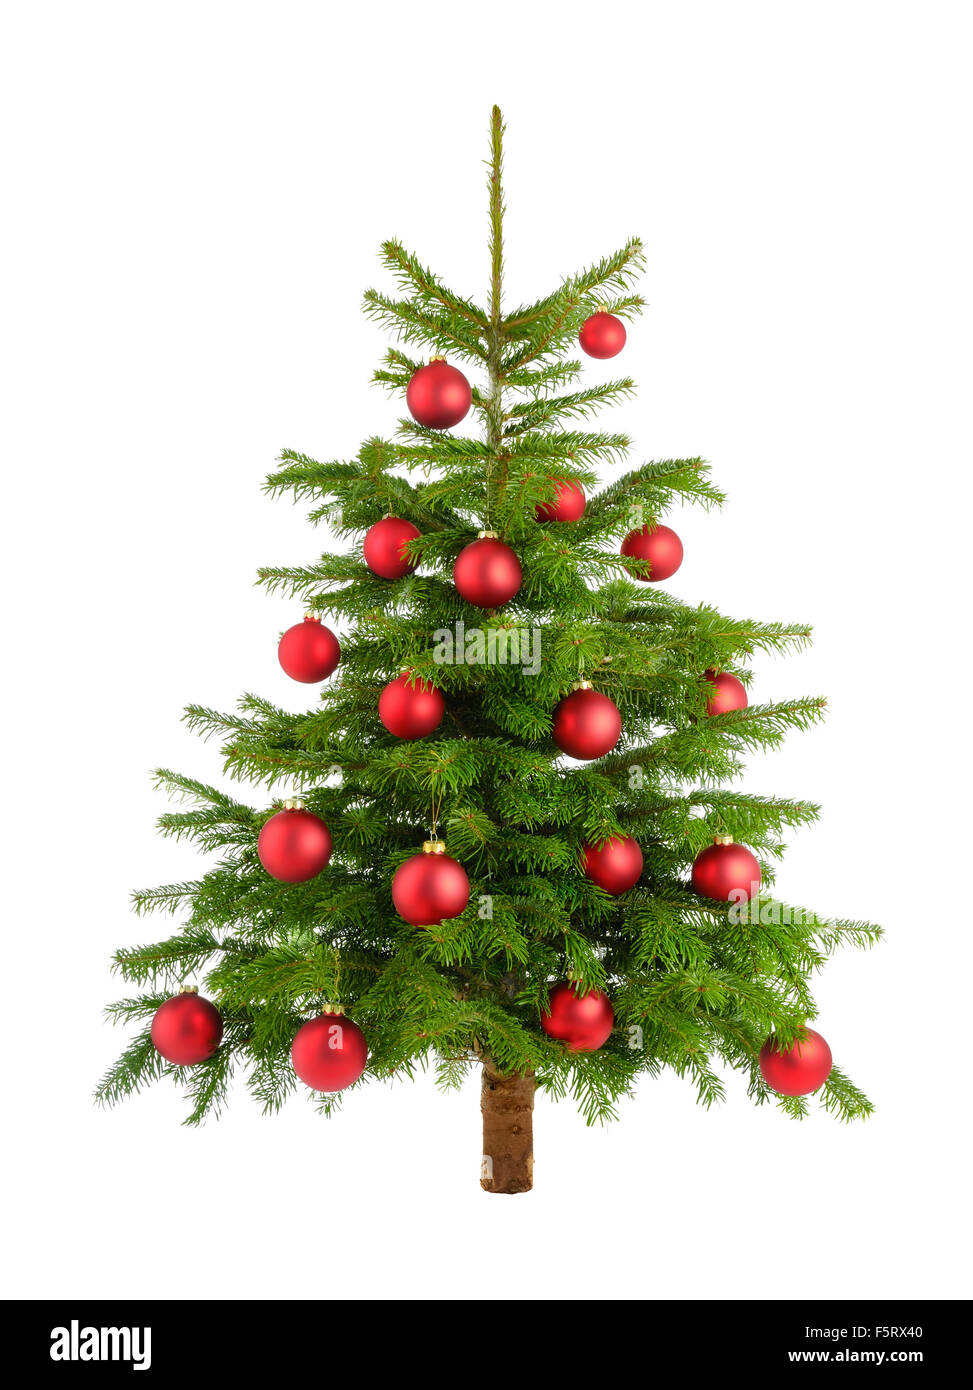 Nettoyer studio shot of un arbre de Noël décoré avec des boules rouges, isolated on white Banque D'Images